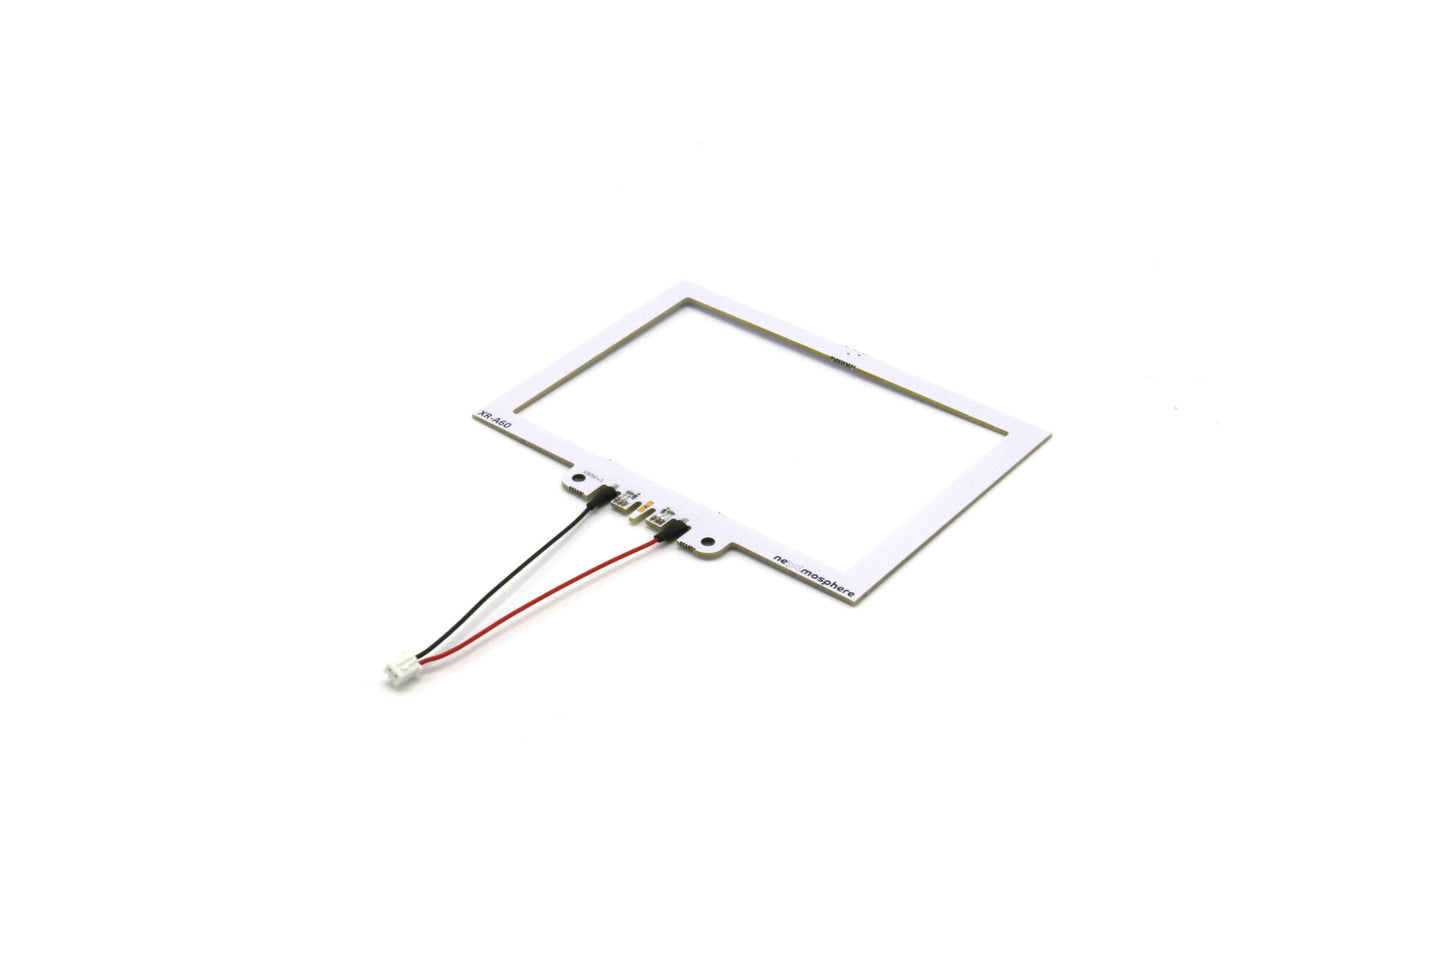 Nexmosphere RFID Antenna, rectangular, A6 (portrait) 148x105mm